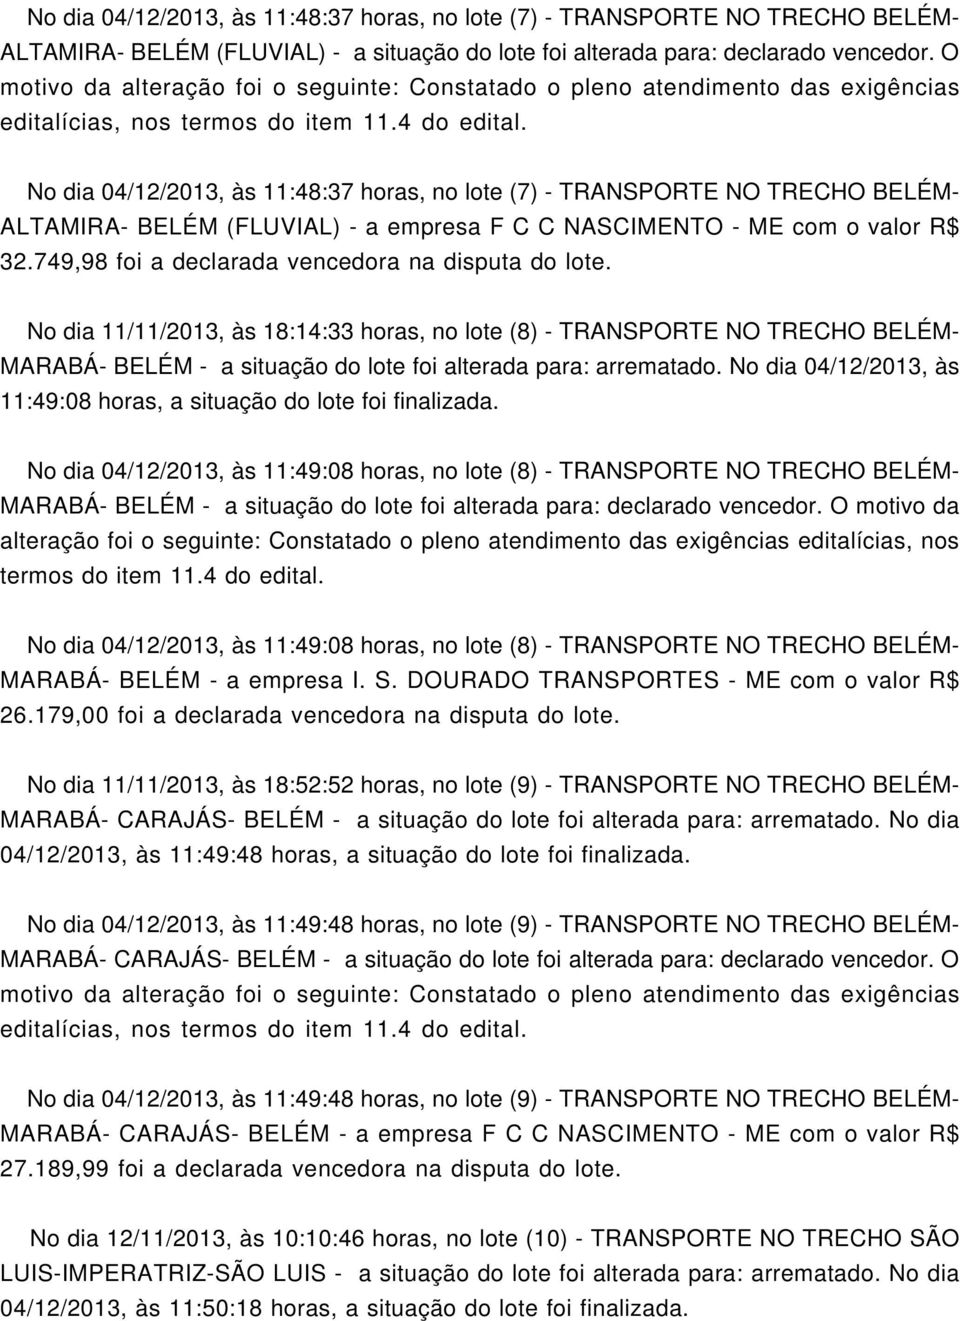 No dia 04/12/2013, às 11:48:37 horas, no lote (7) - TRANSPORTE NO TRECHO BELÉM- ALTAMIRA- BELÉM (FLUVIAL) - a empresa F C C NASCINTO - com o valor R$ 32.